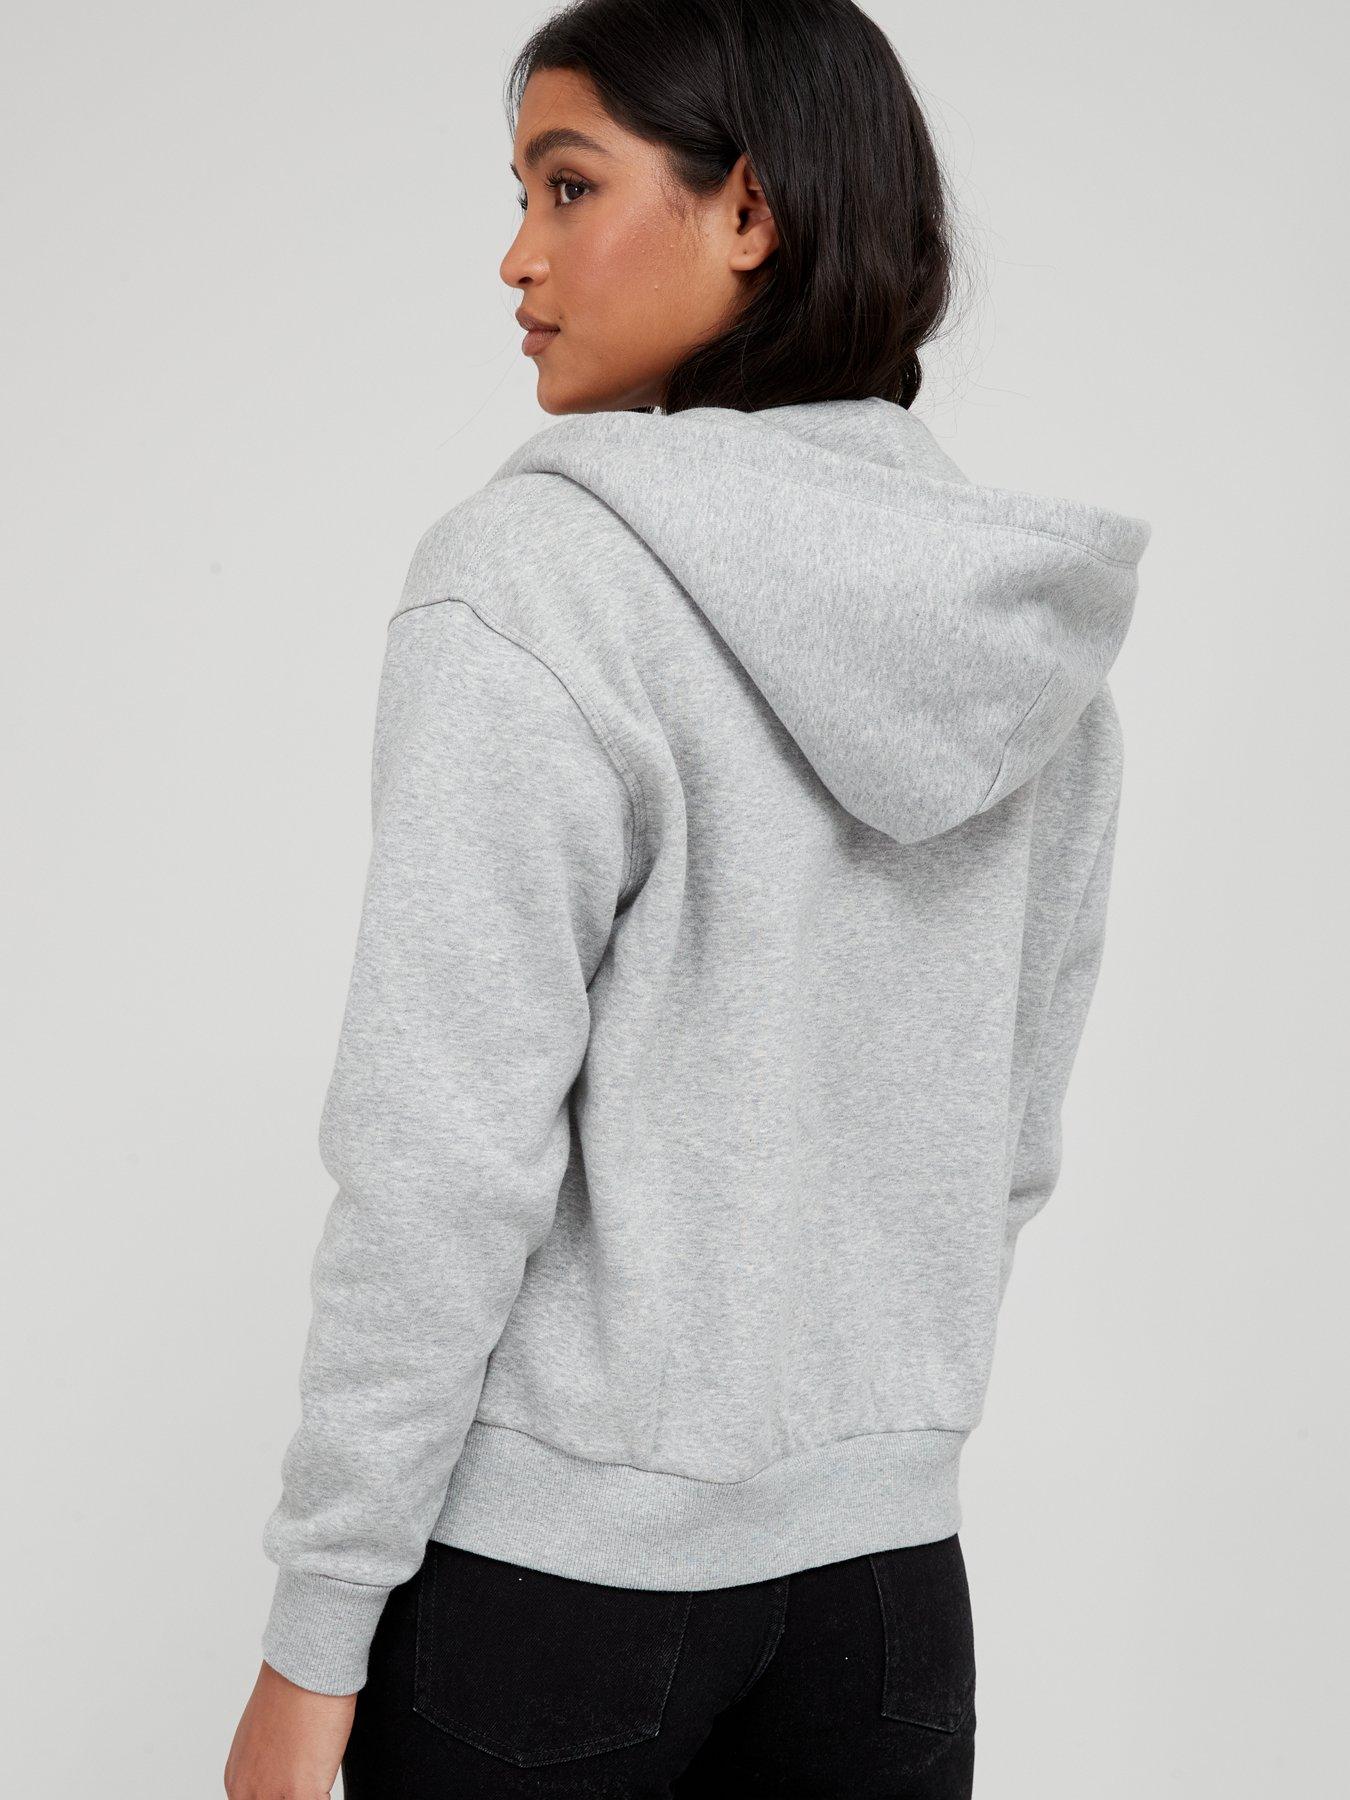  Embroidered Star Chevron Zip Through Hoodie - Grey